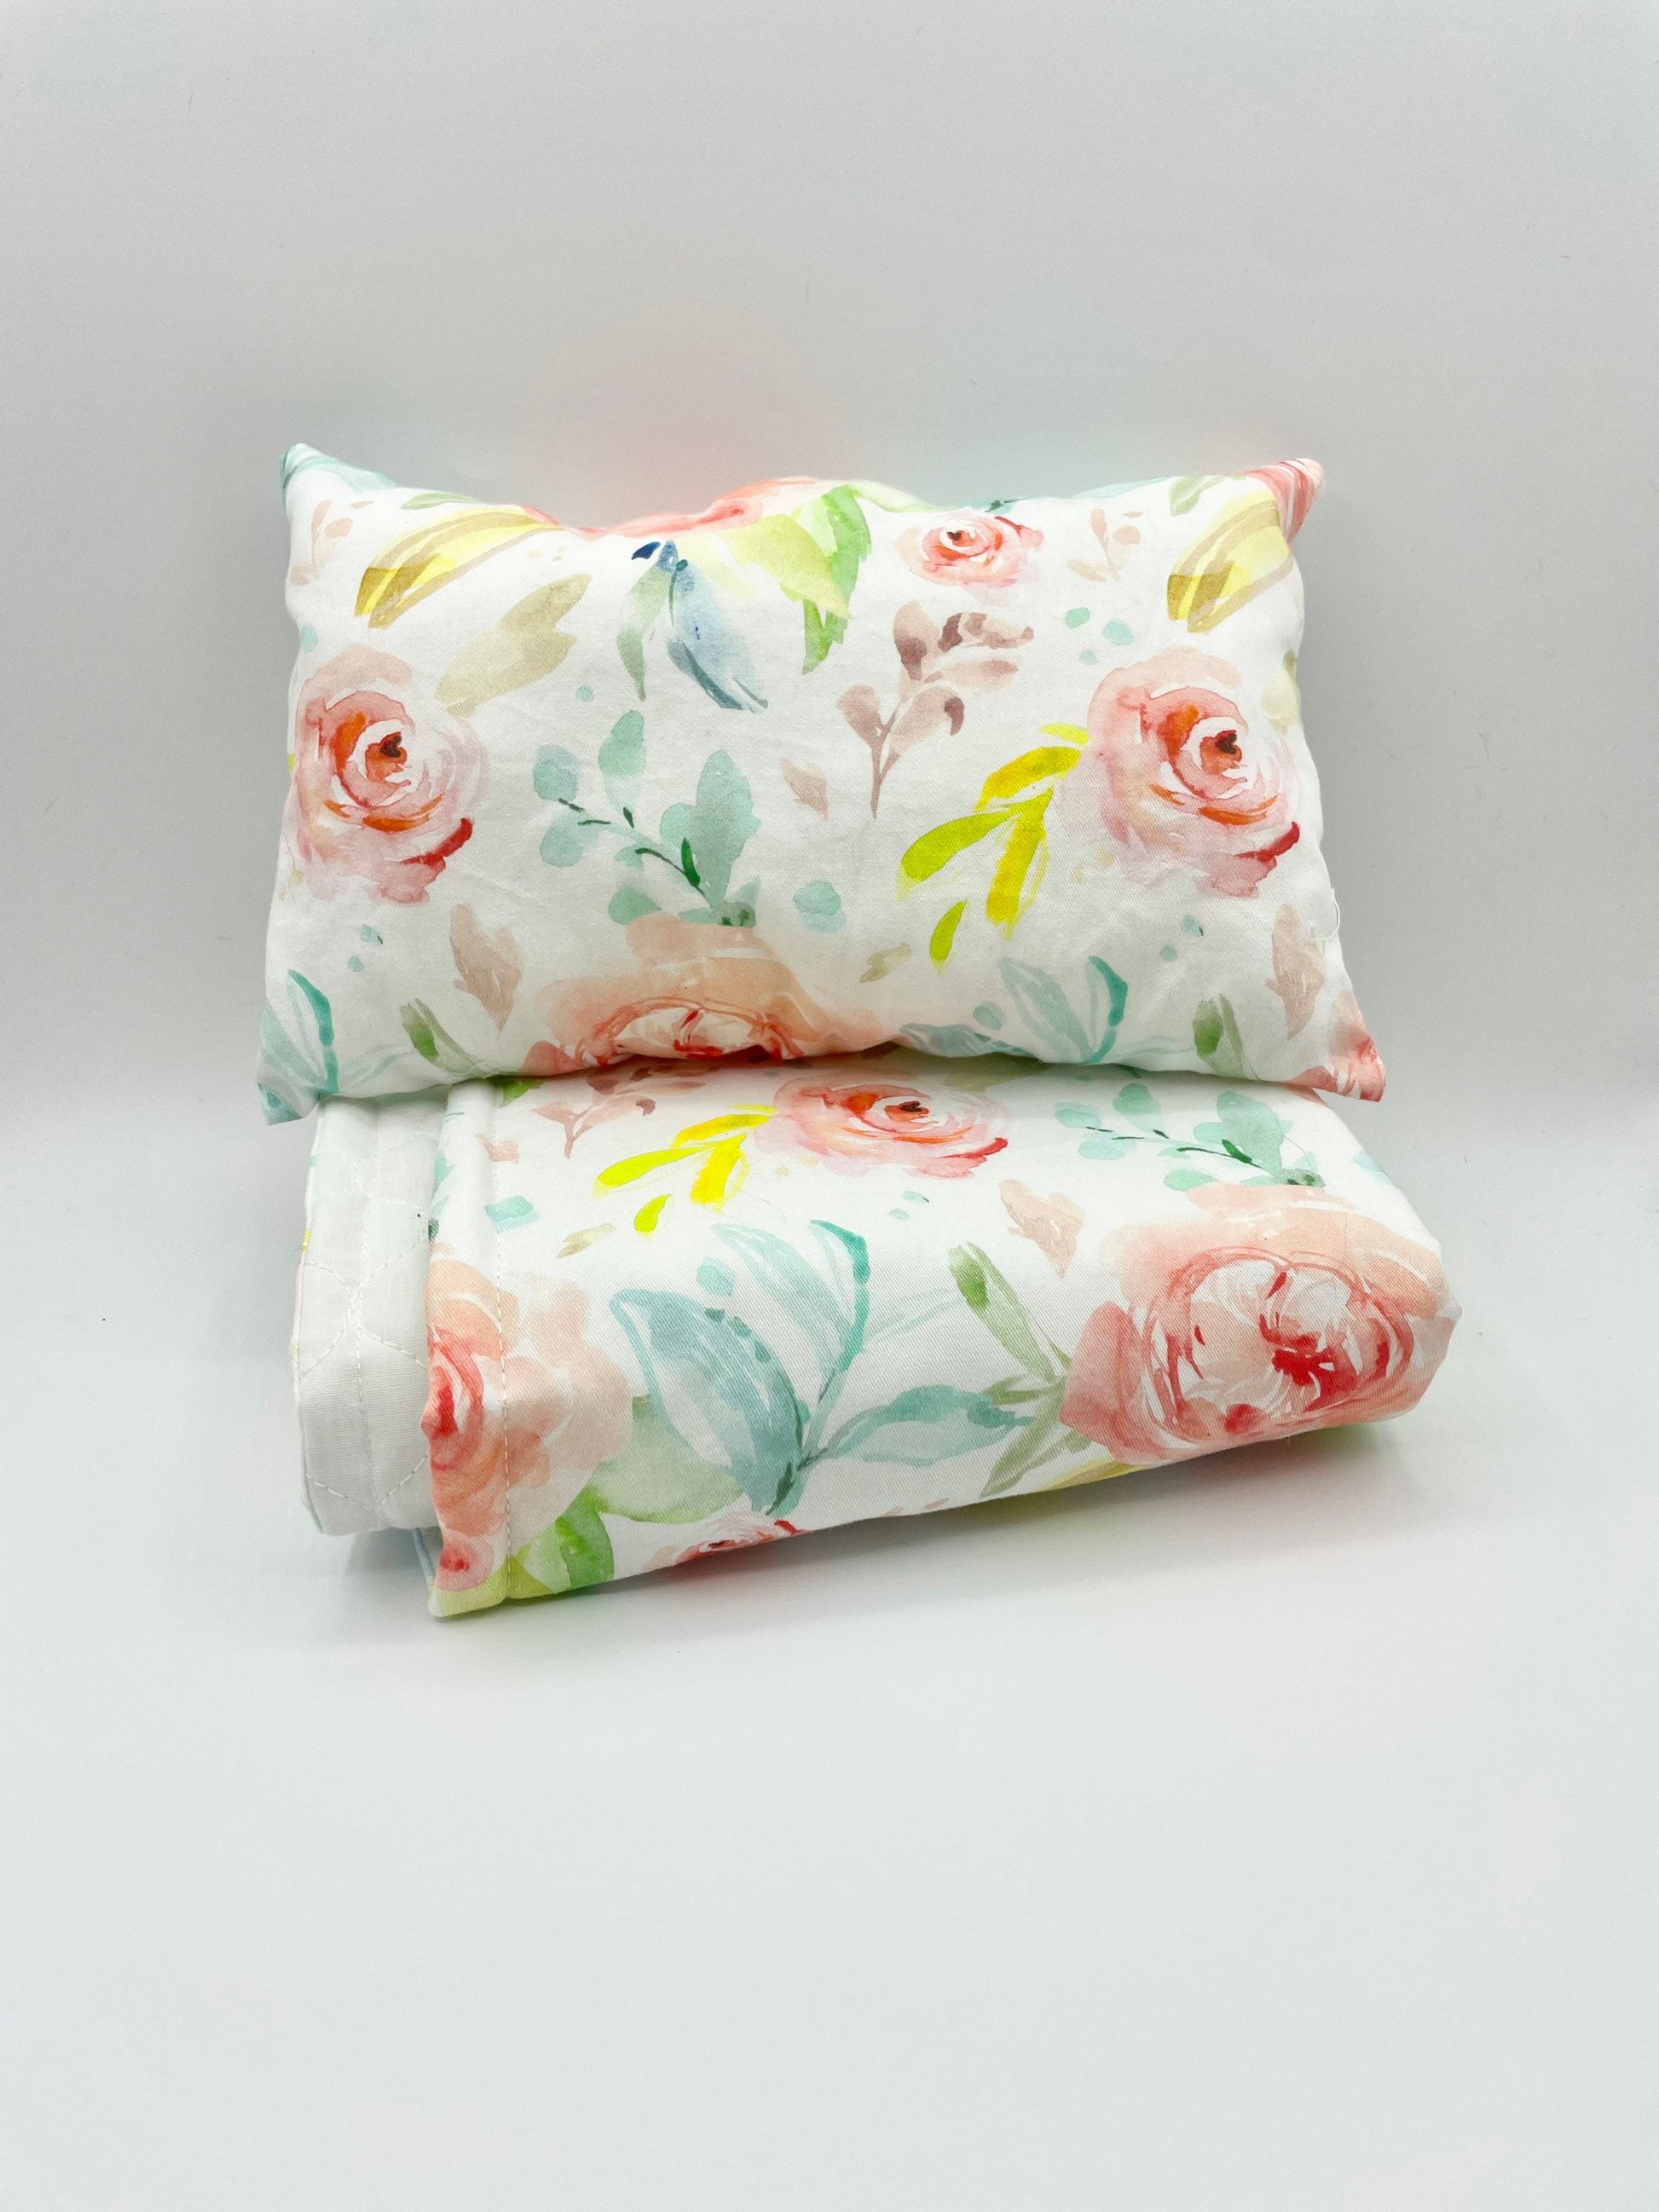 Dolls Blanket Bright Floral Bedding - bed cot quilt